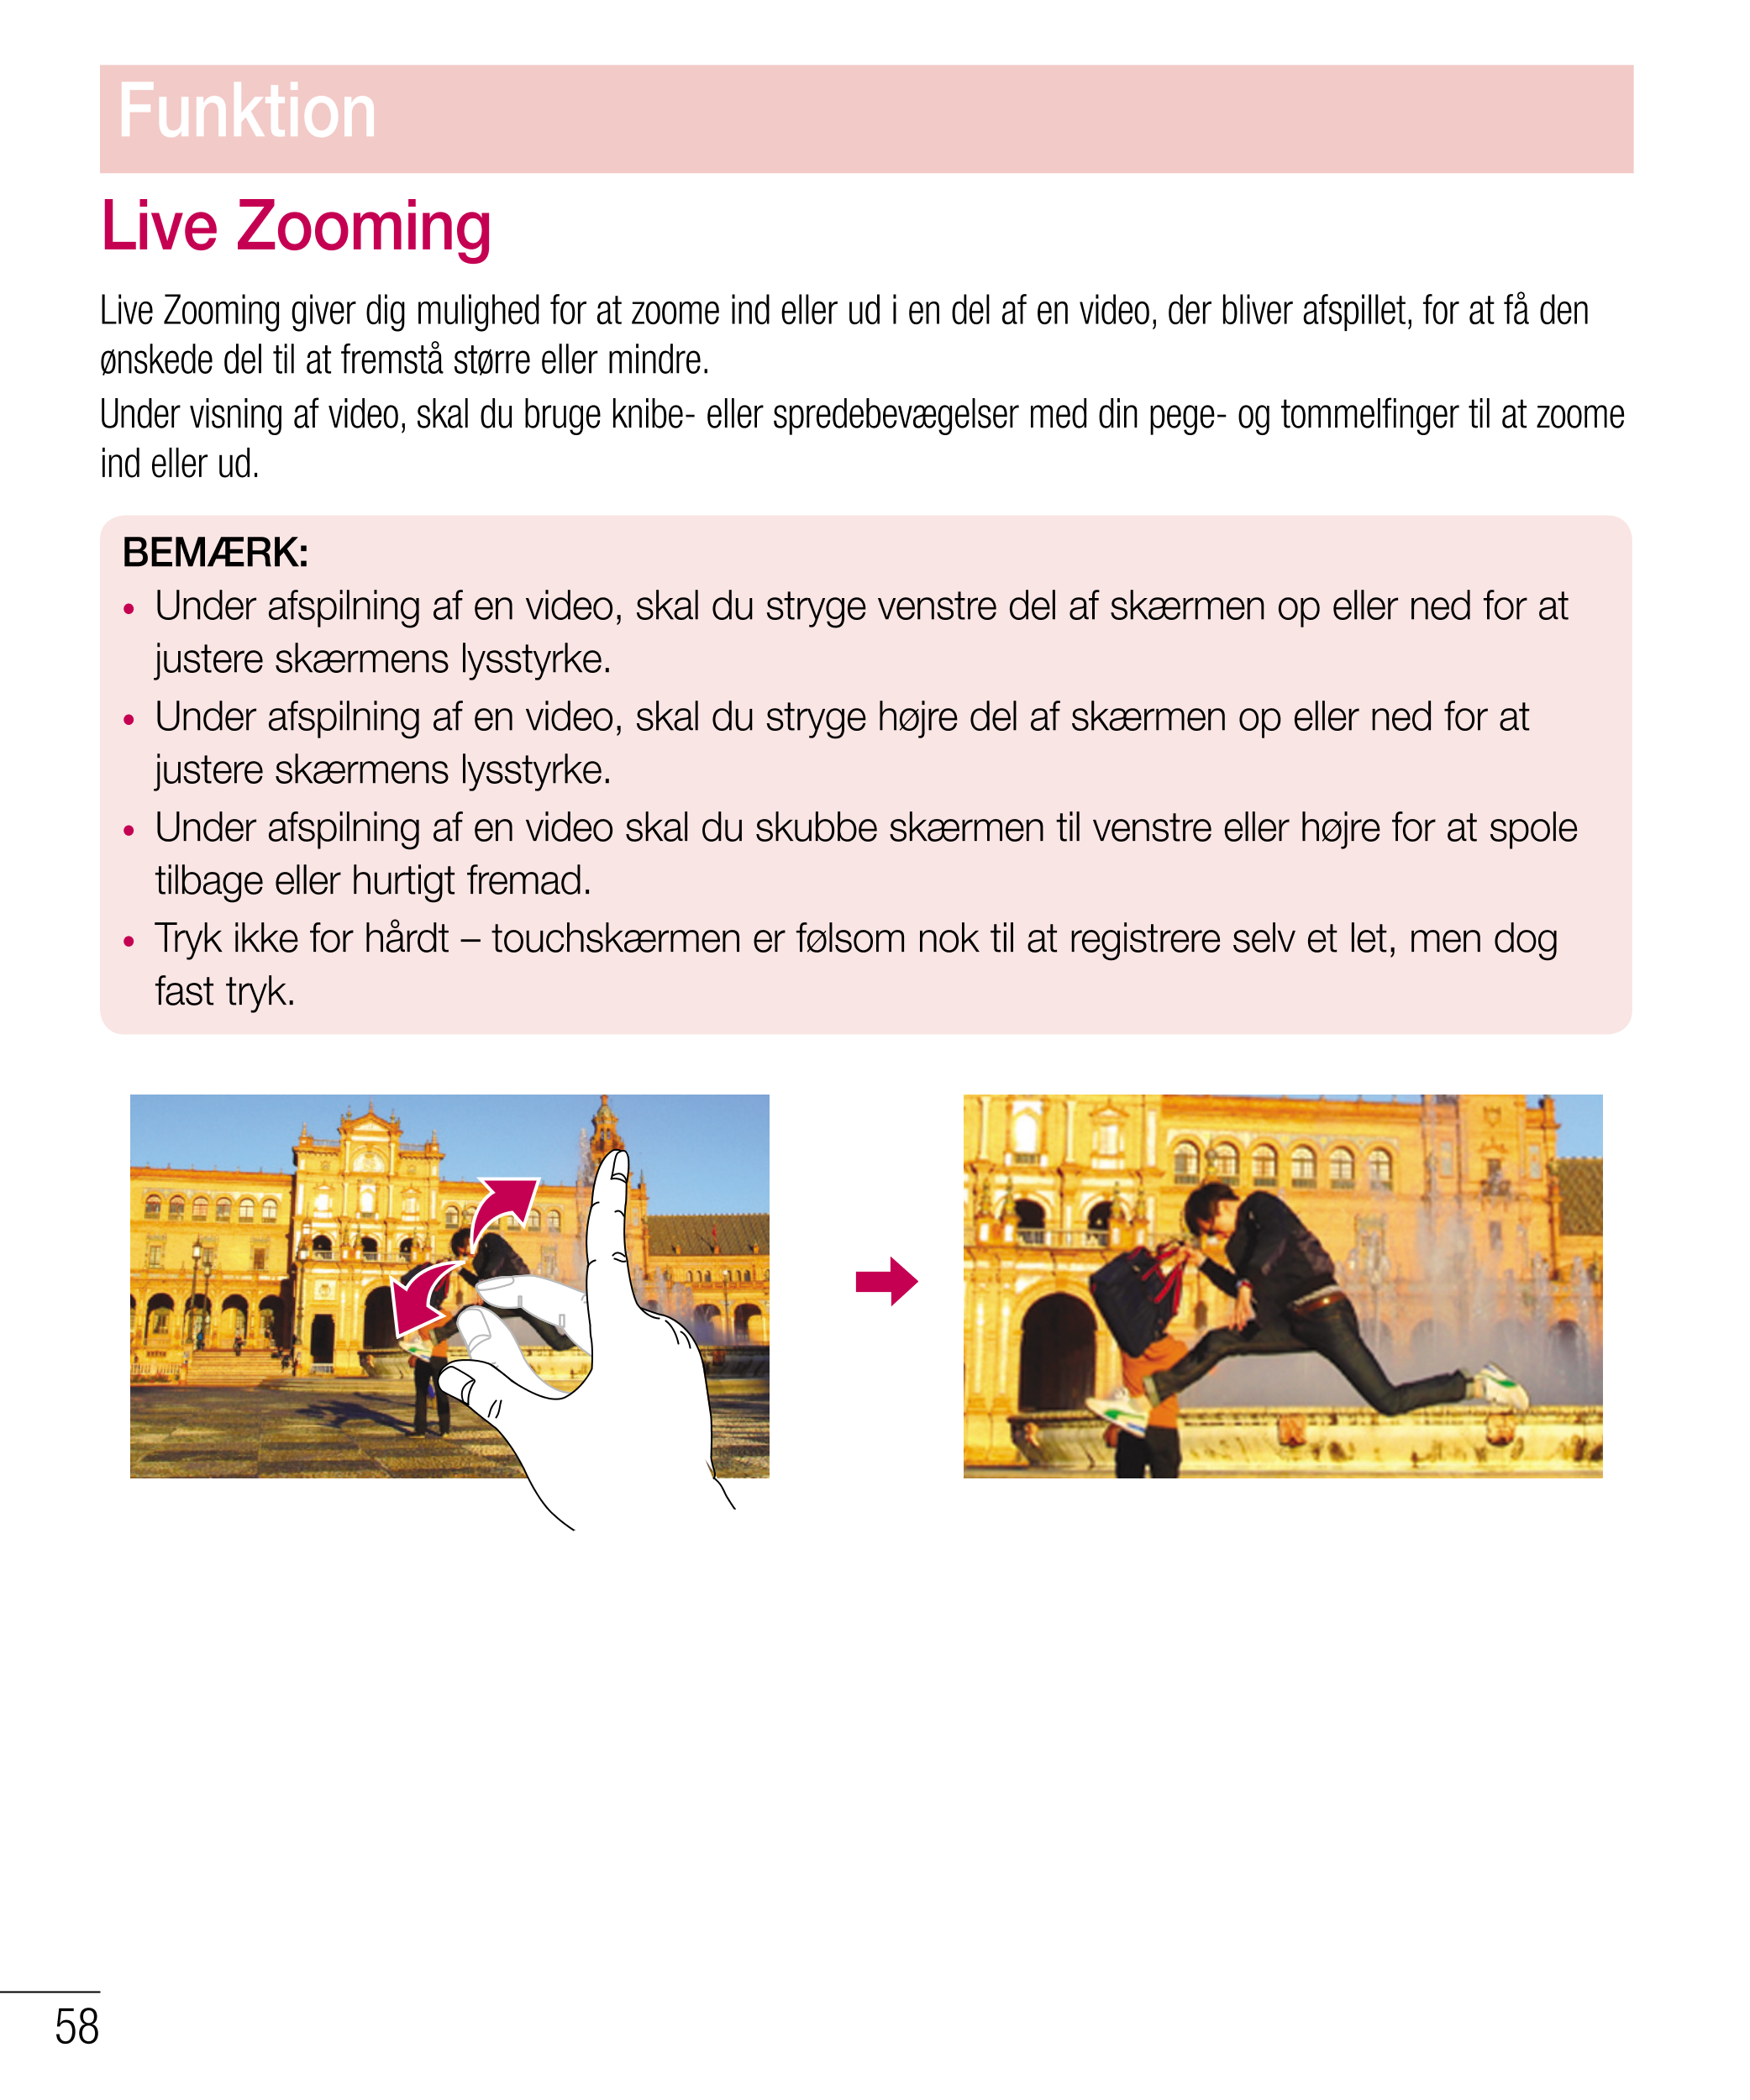 Funktion
Live Zooming
Live Zooming giver dig mulighed for at zoome ind eller ud i en del af en video, der bliver afspillet, for 